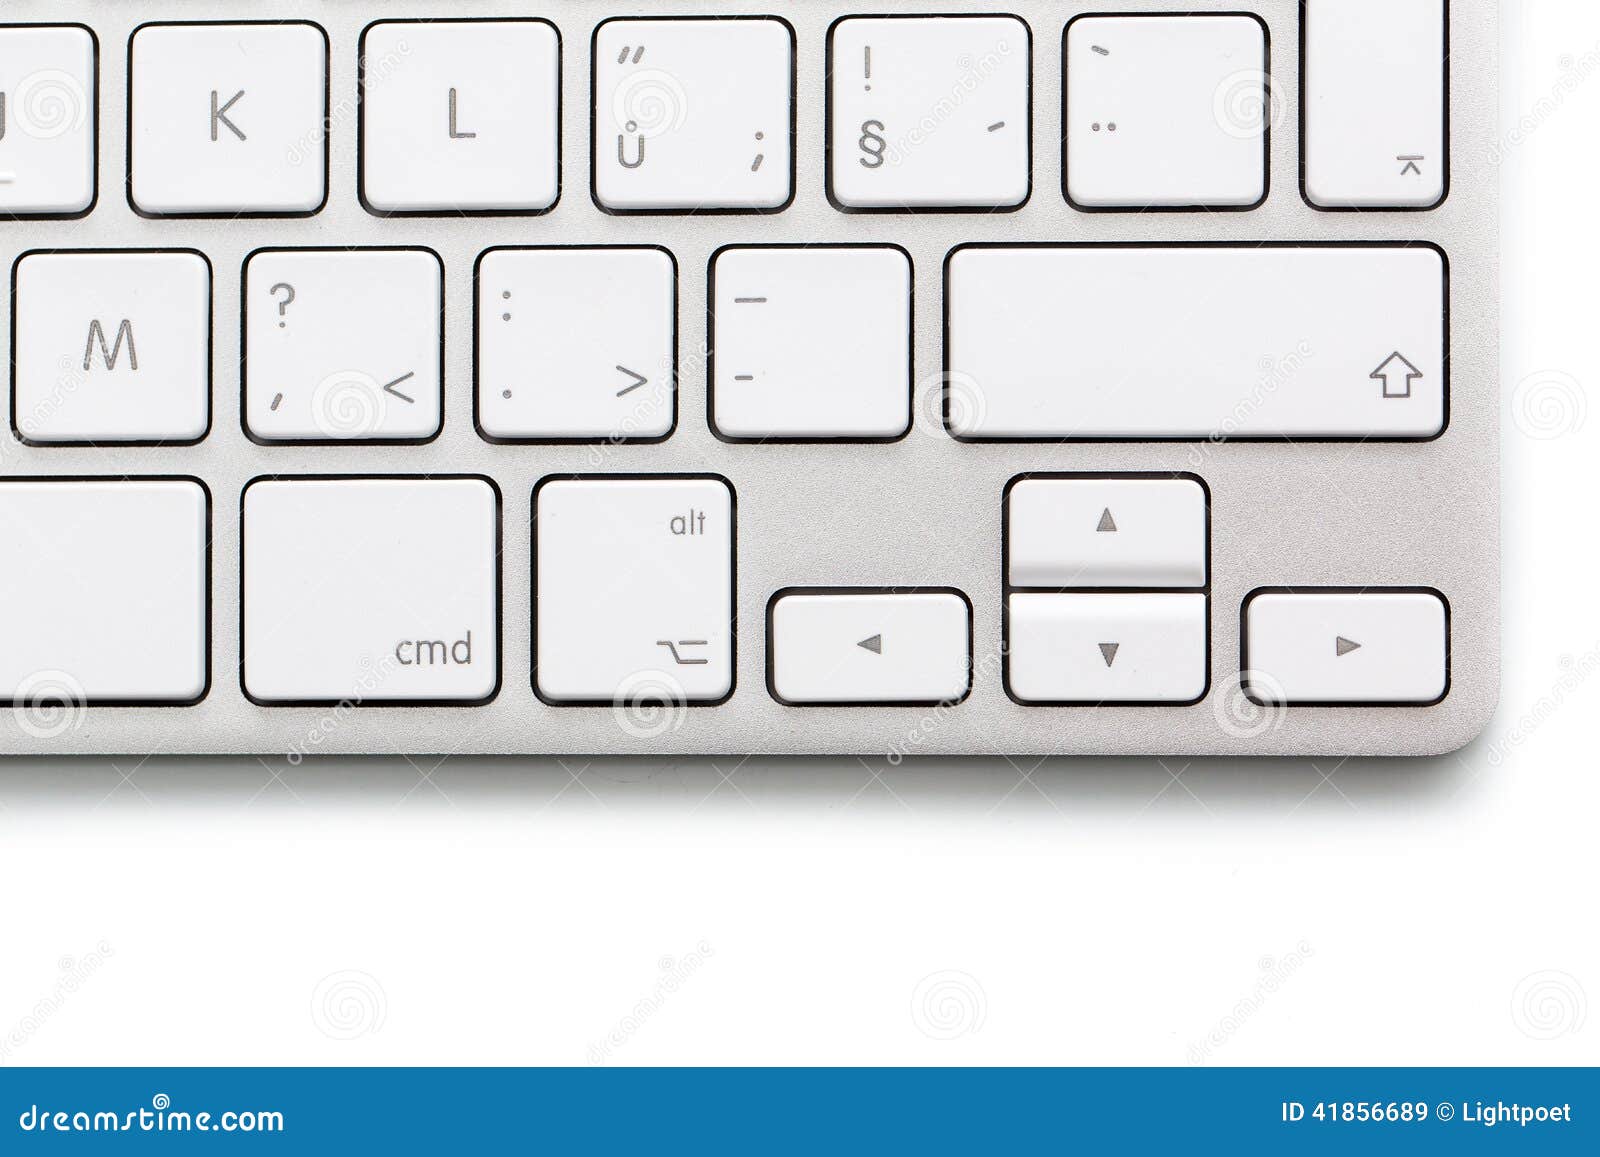 modern keybord on white